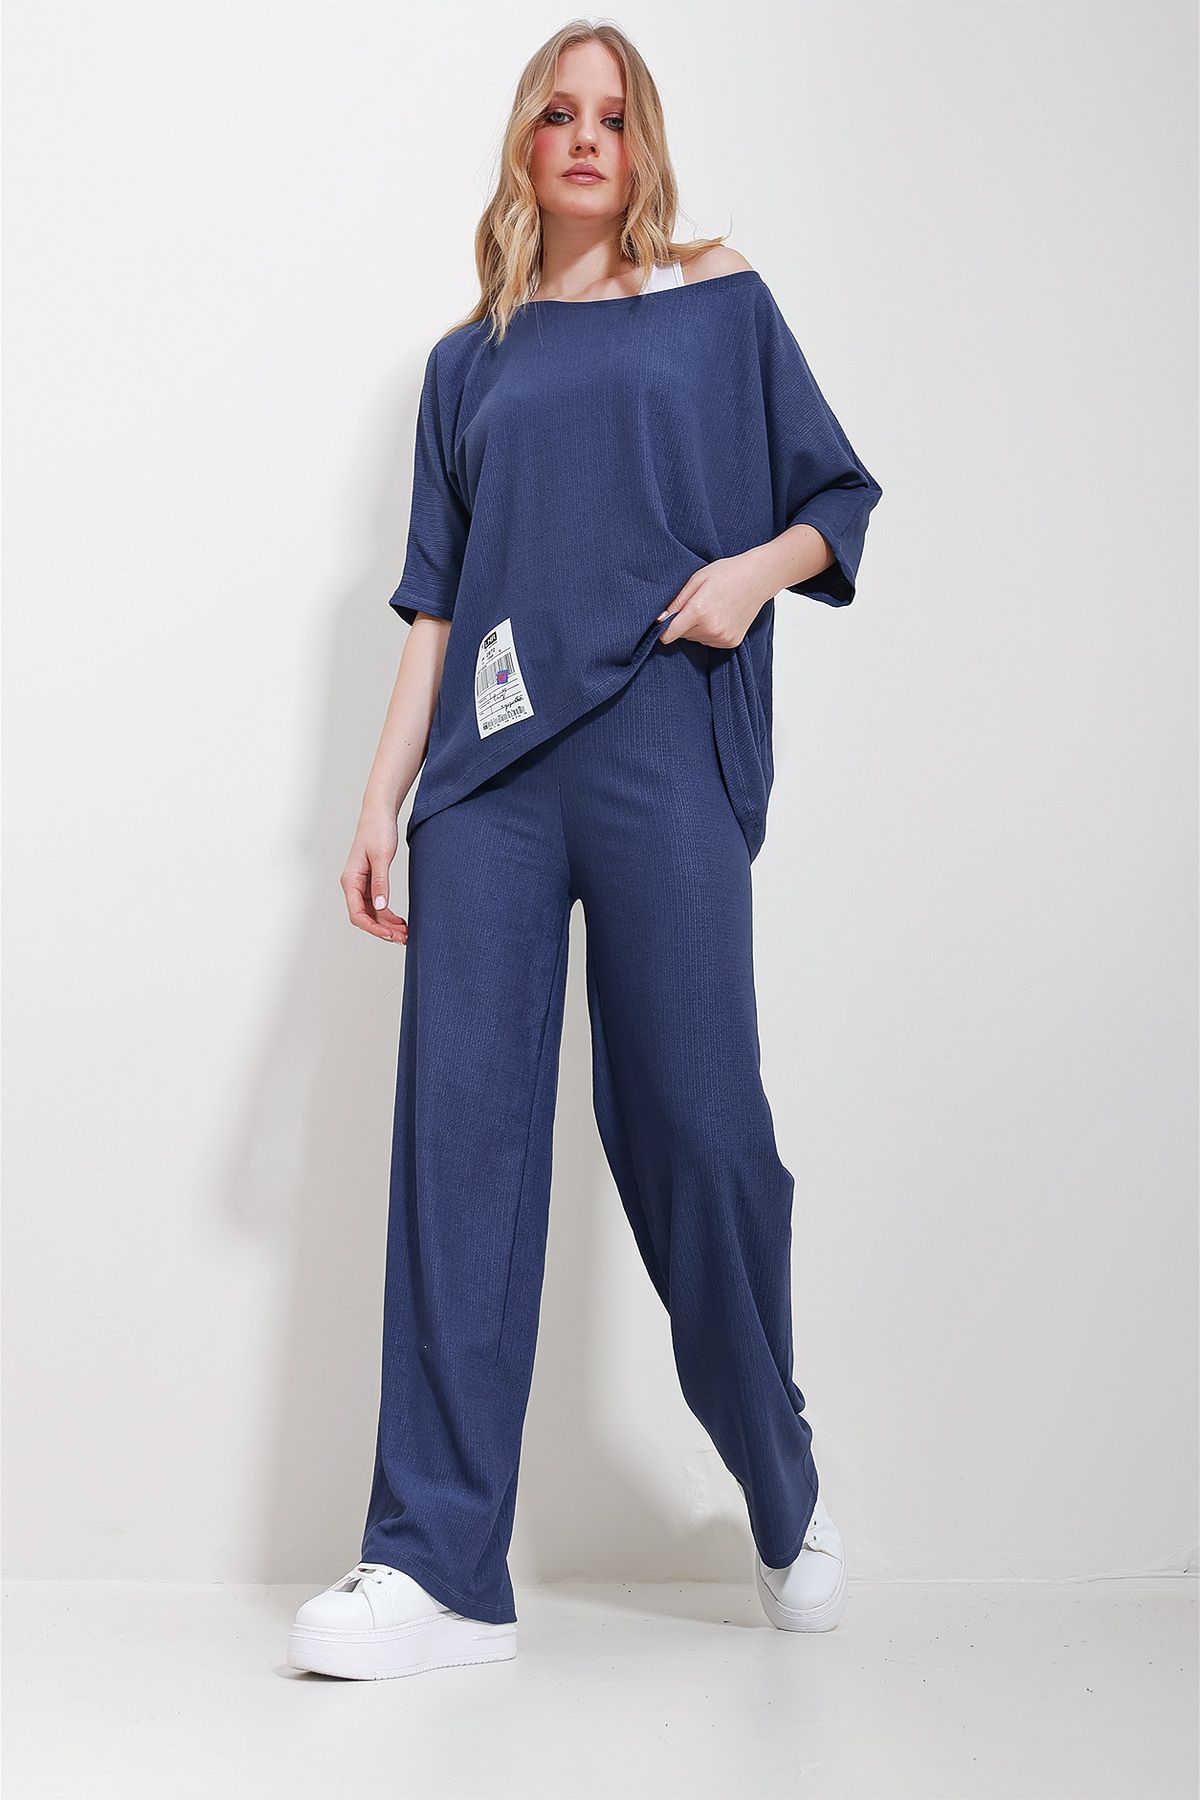 Trend Alaçatı Stili Kadın Lacivert Kayık Yaka Bluz Ve Palazzo Pantolon 3'Lü Takım ALC-X11605